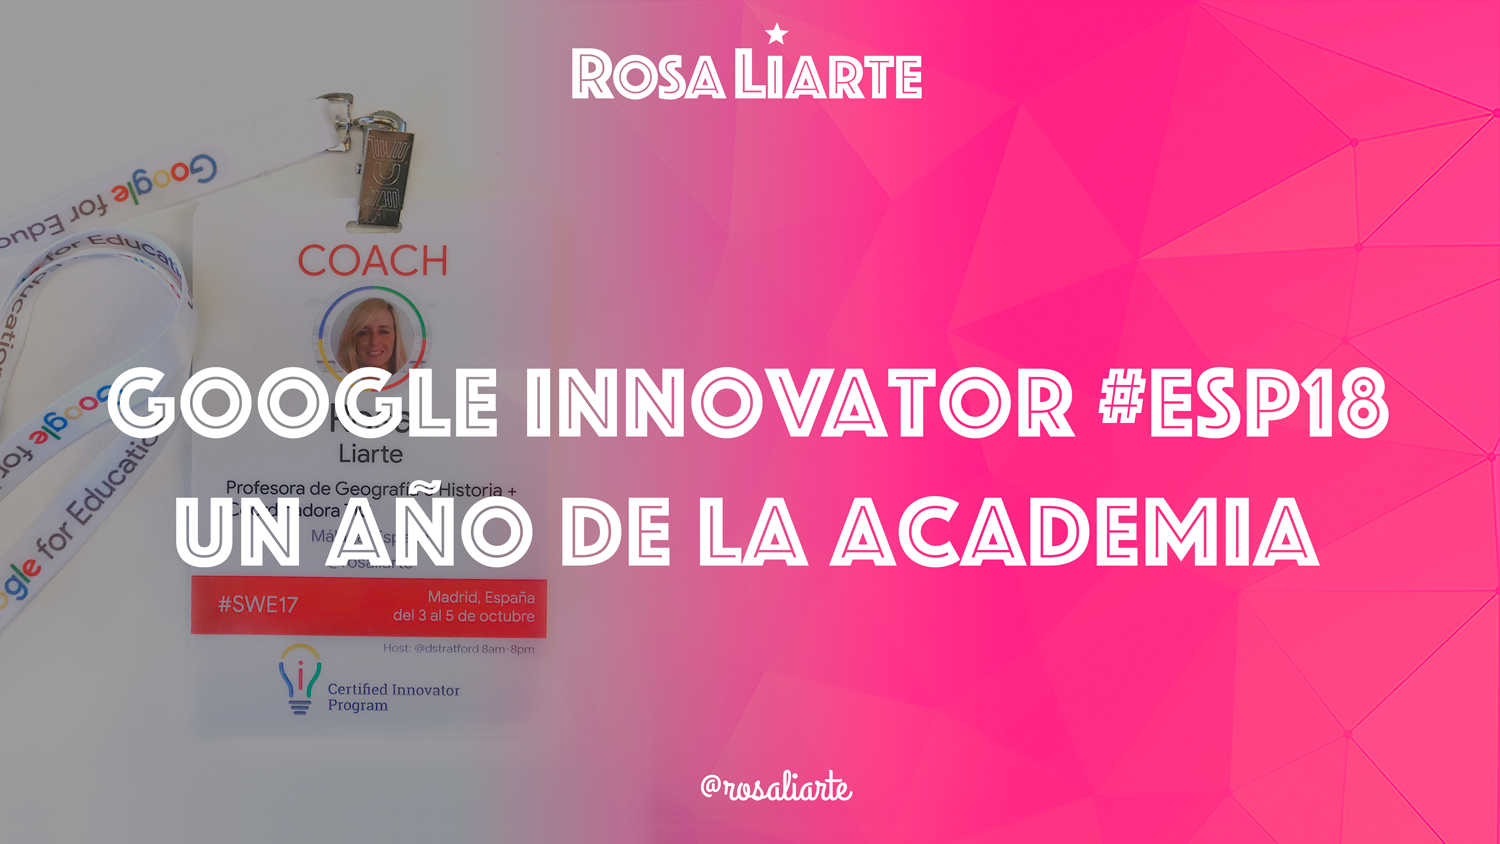 Un año de la academia de Google Innovator #ESP18